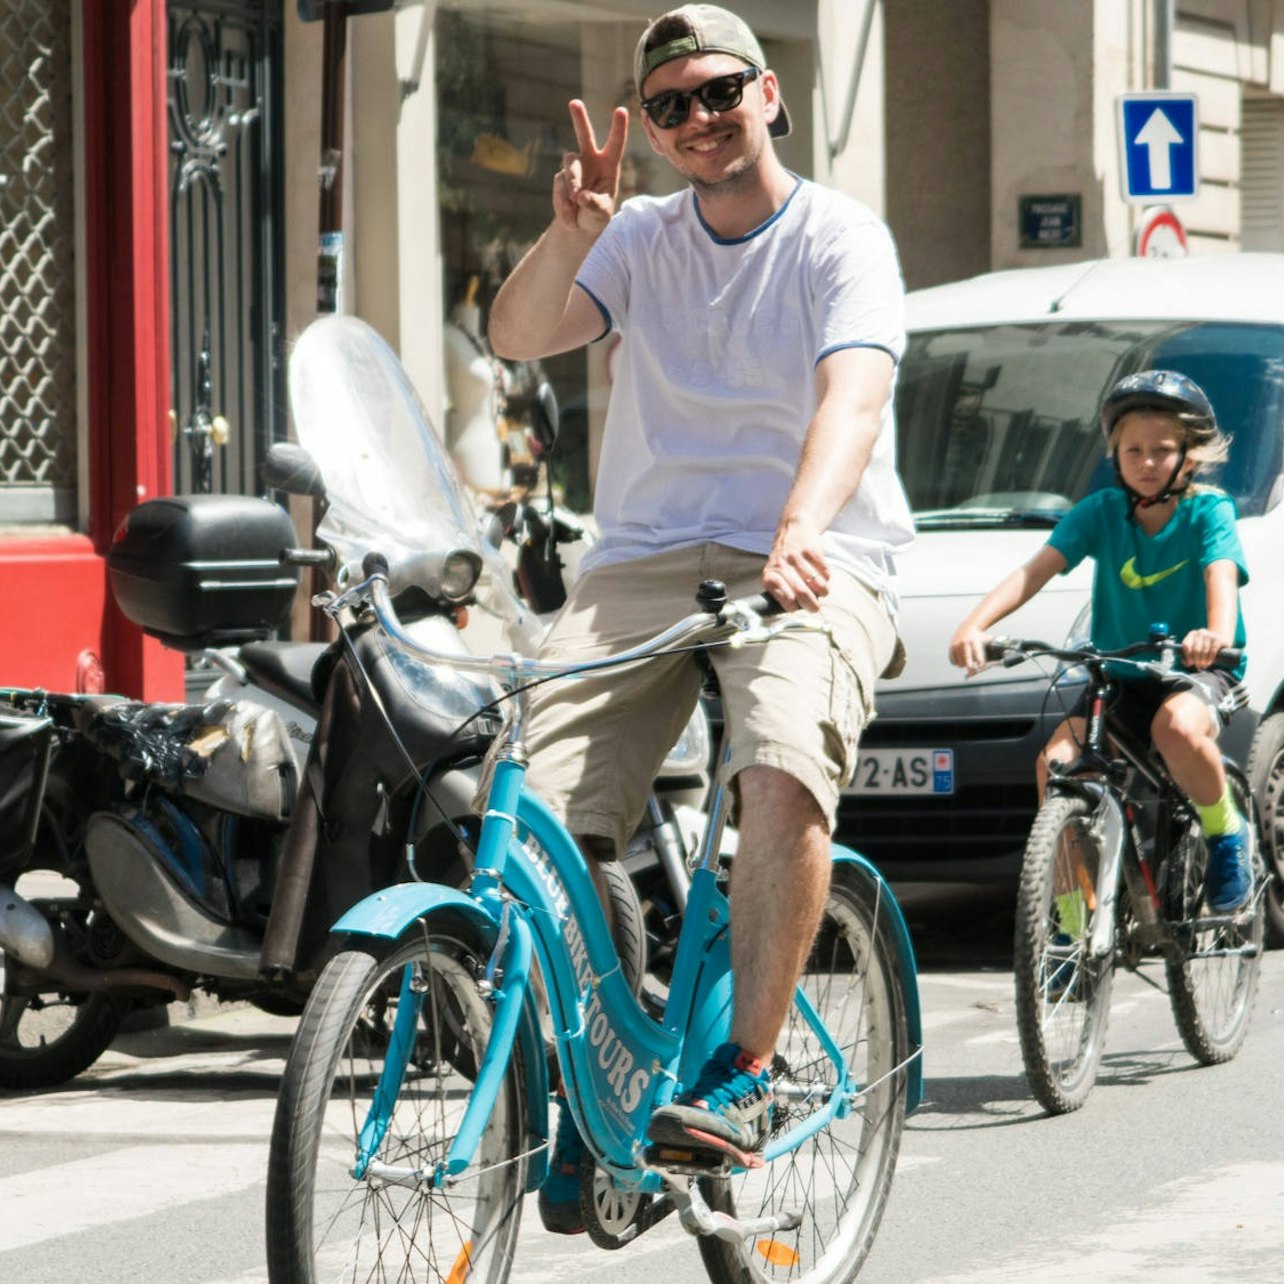 Paris Destaques da Bike Tour - Acomodações em Paris